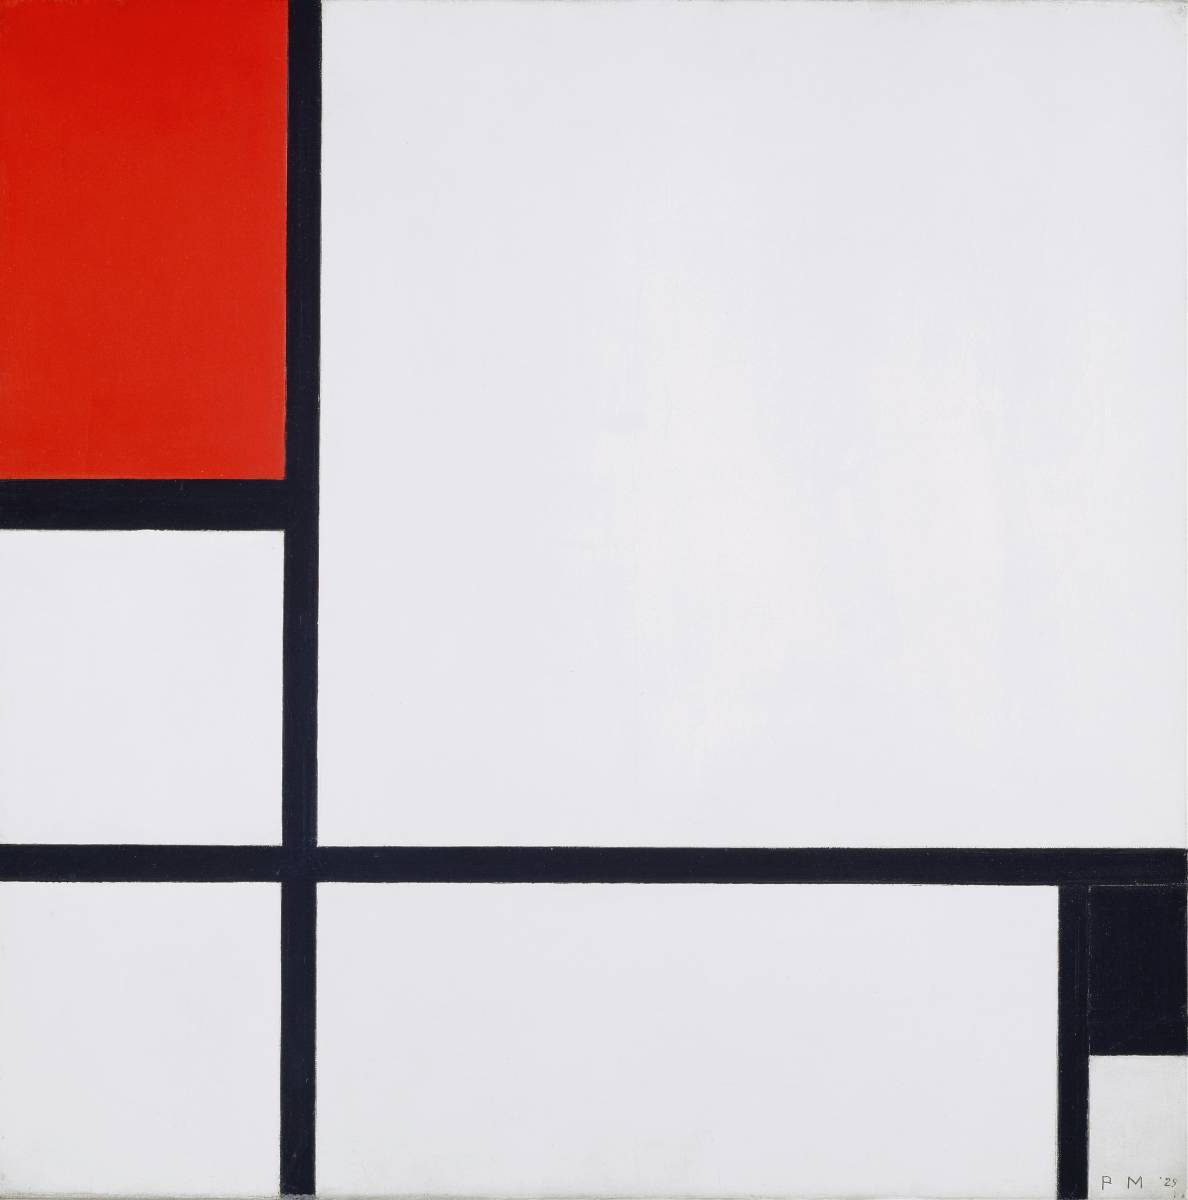 新蒙德里安红黑组合木框3大特点包括光催化处理特价1980日元(含运费)立即购买, 艺术品, 绘画, 其他的